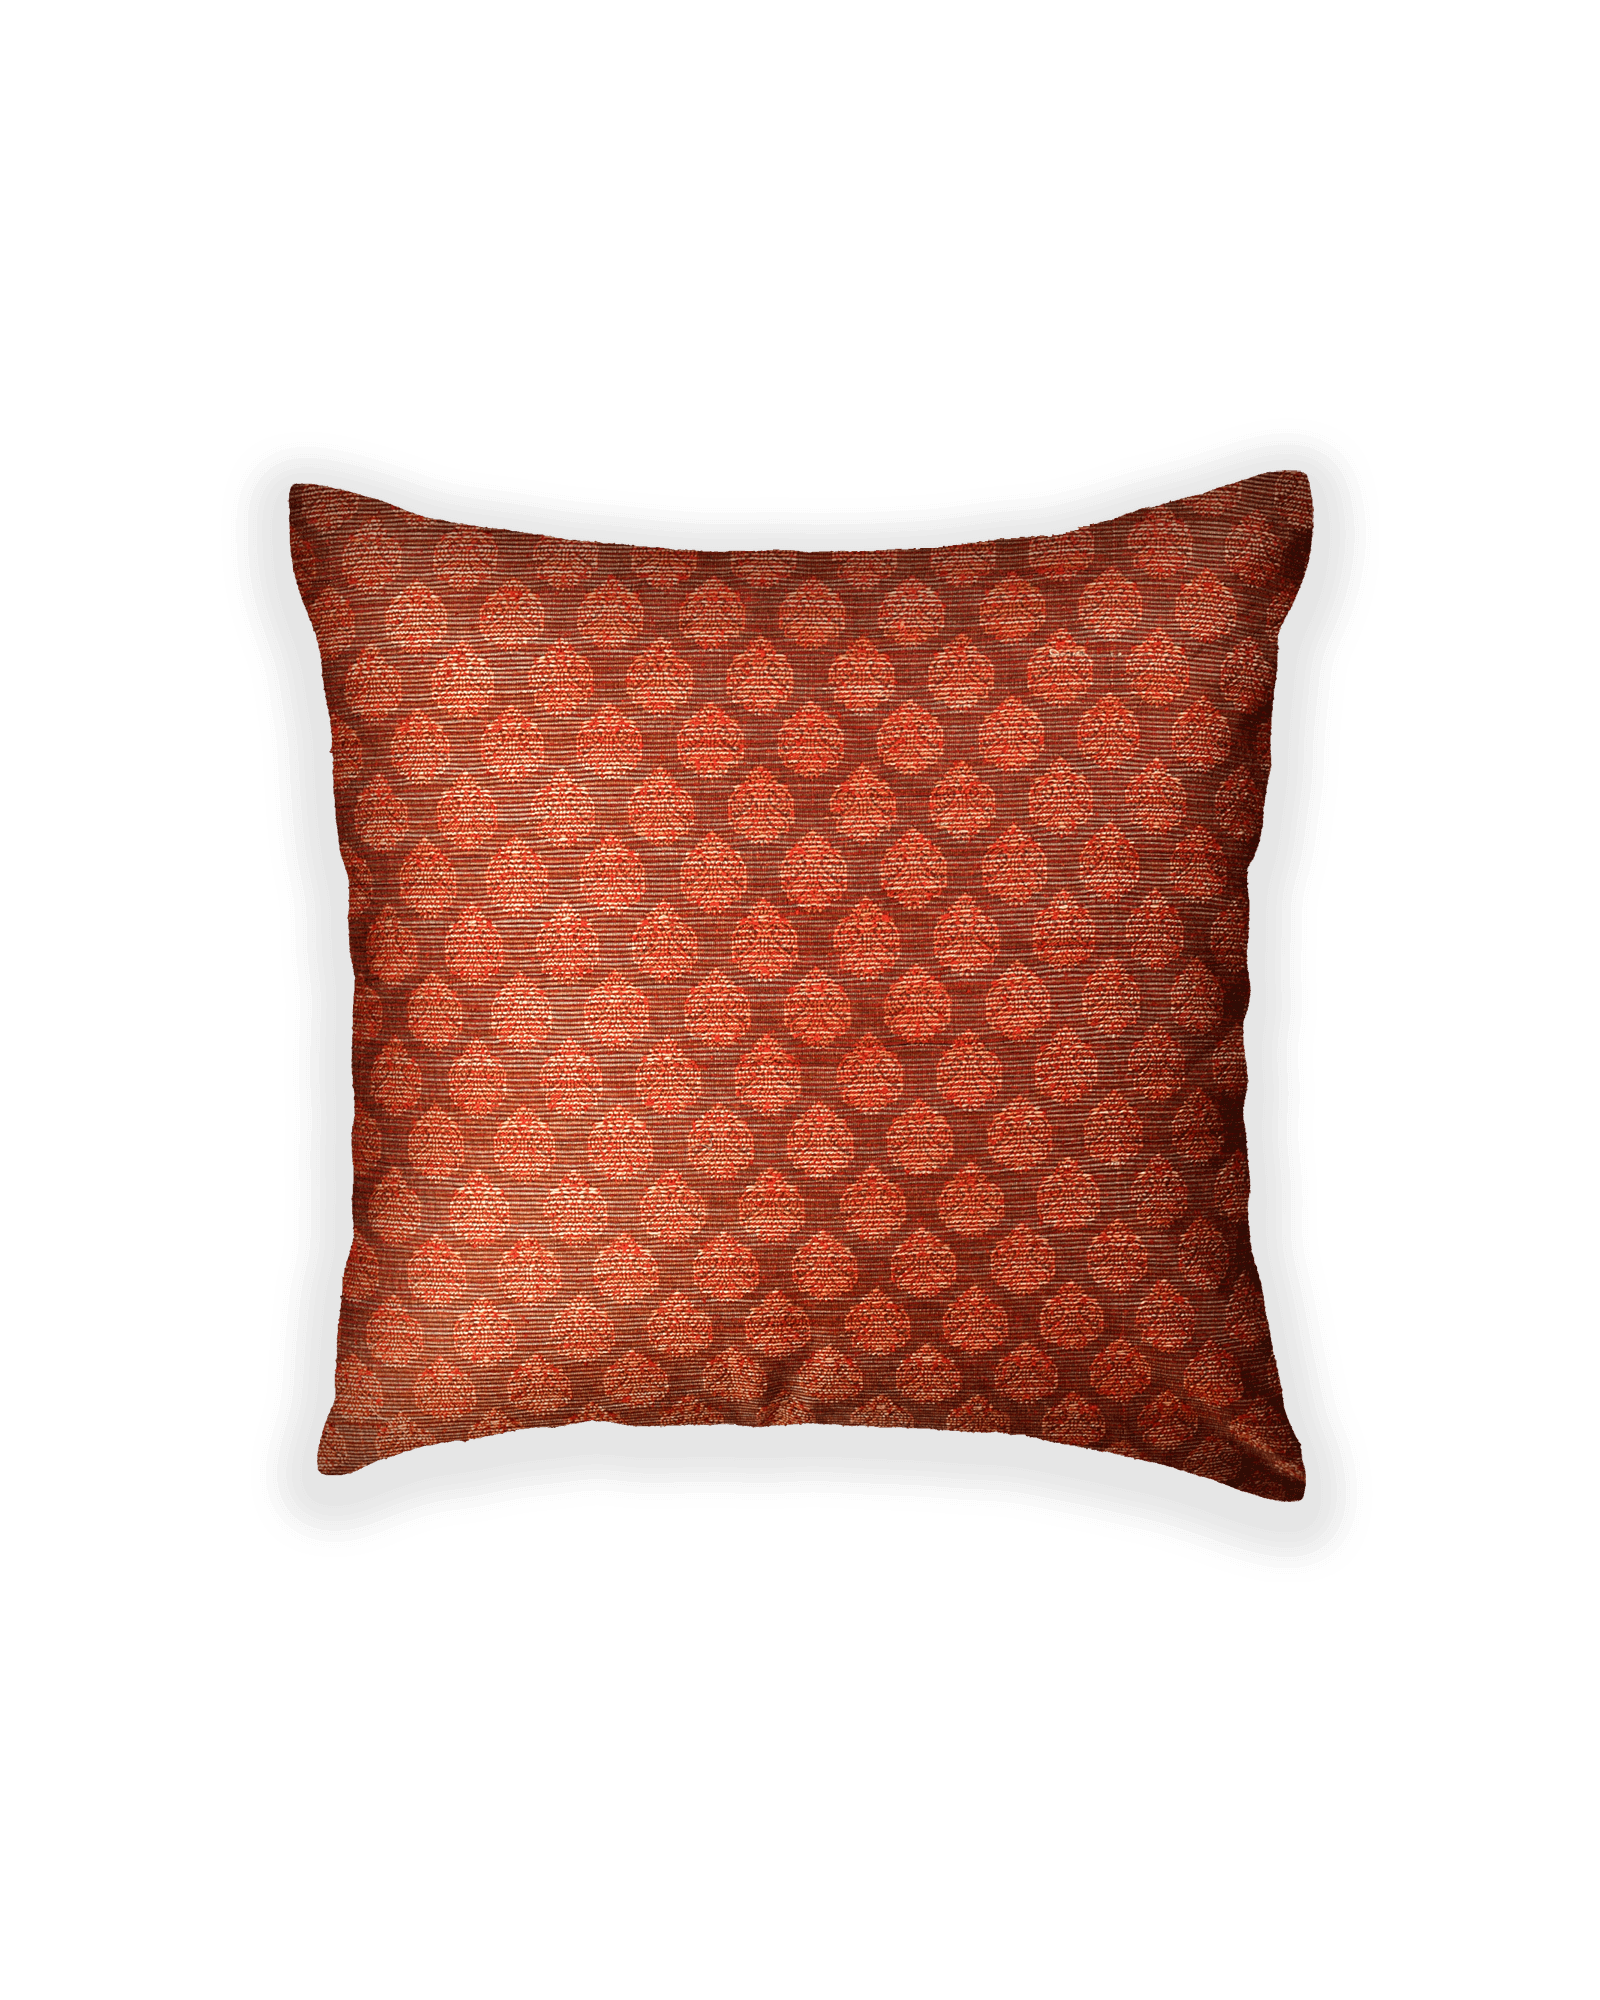 Maroon Banarasi Tanchoi Poly Cotton Cushion Cover 16" - By HolyWeaves, Benares